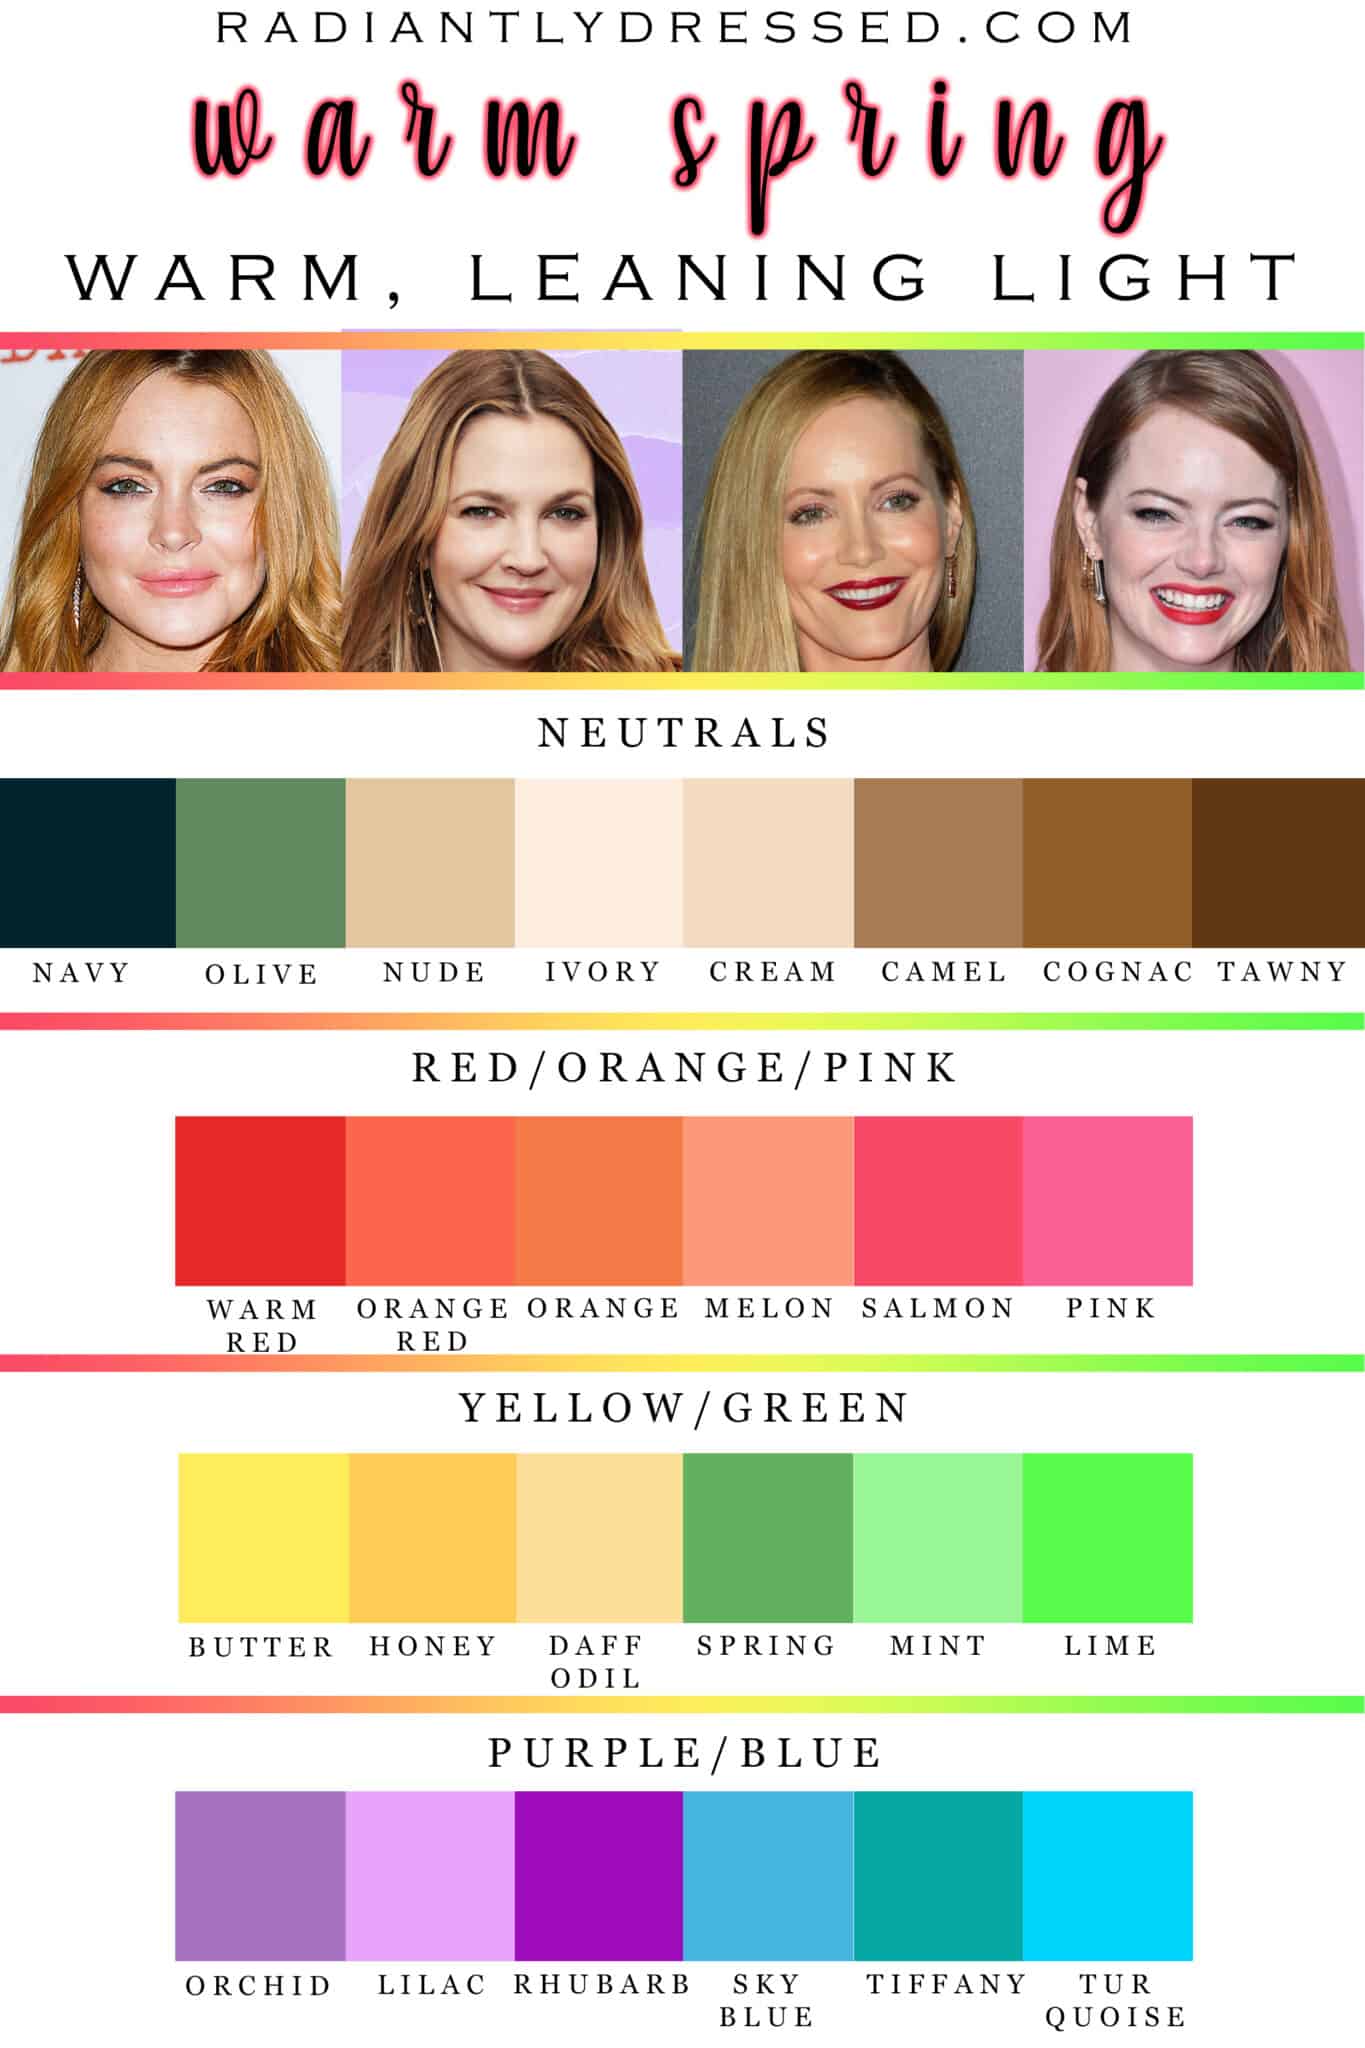 Color Palette For Spring Image to u